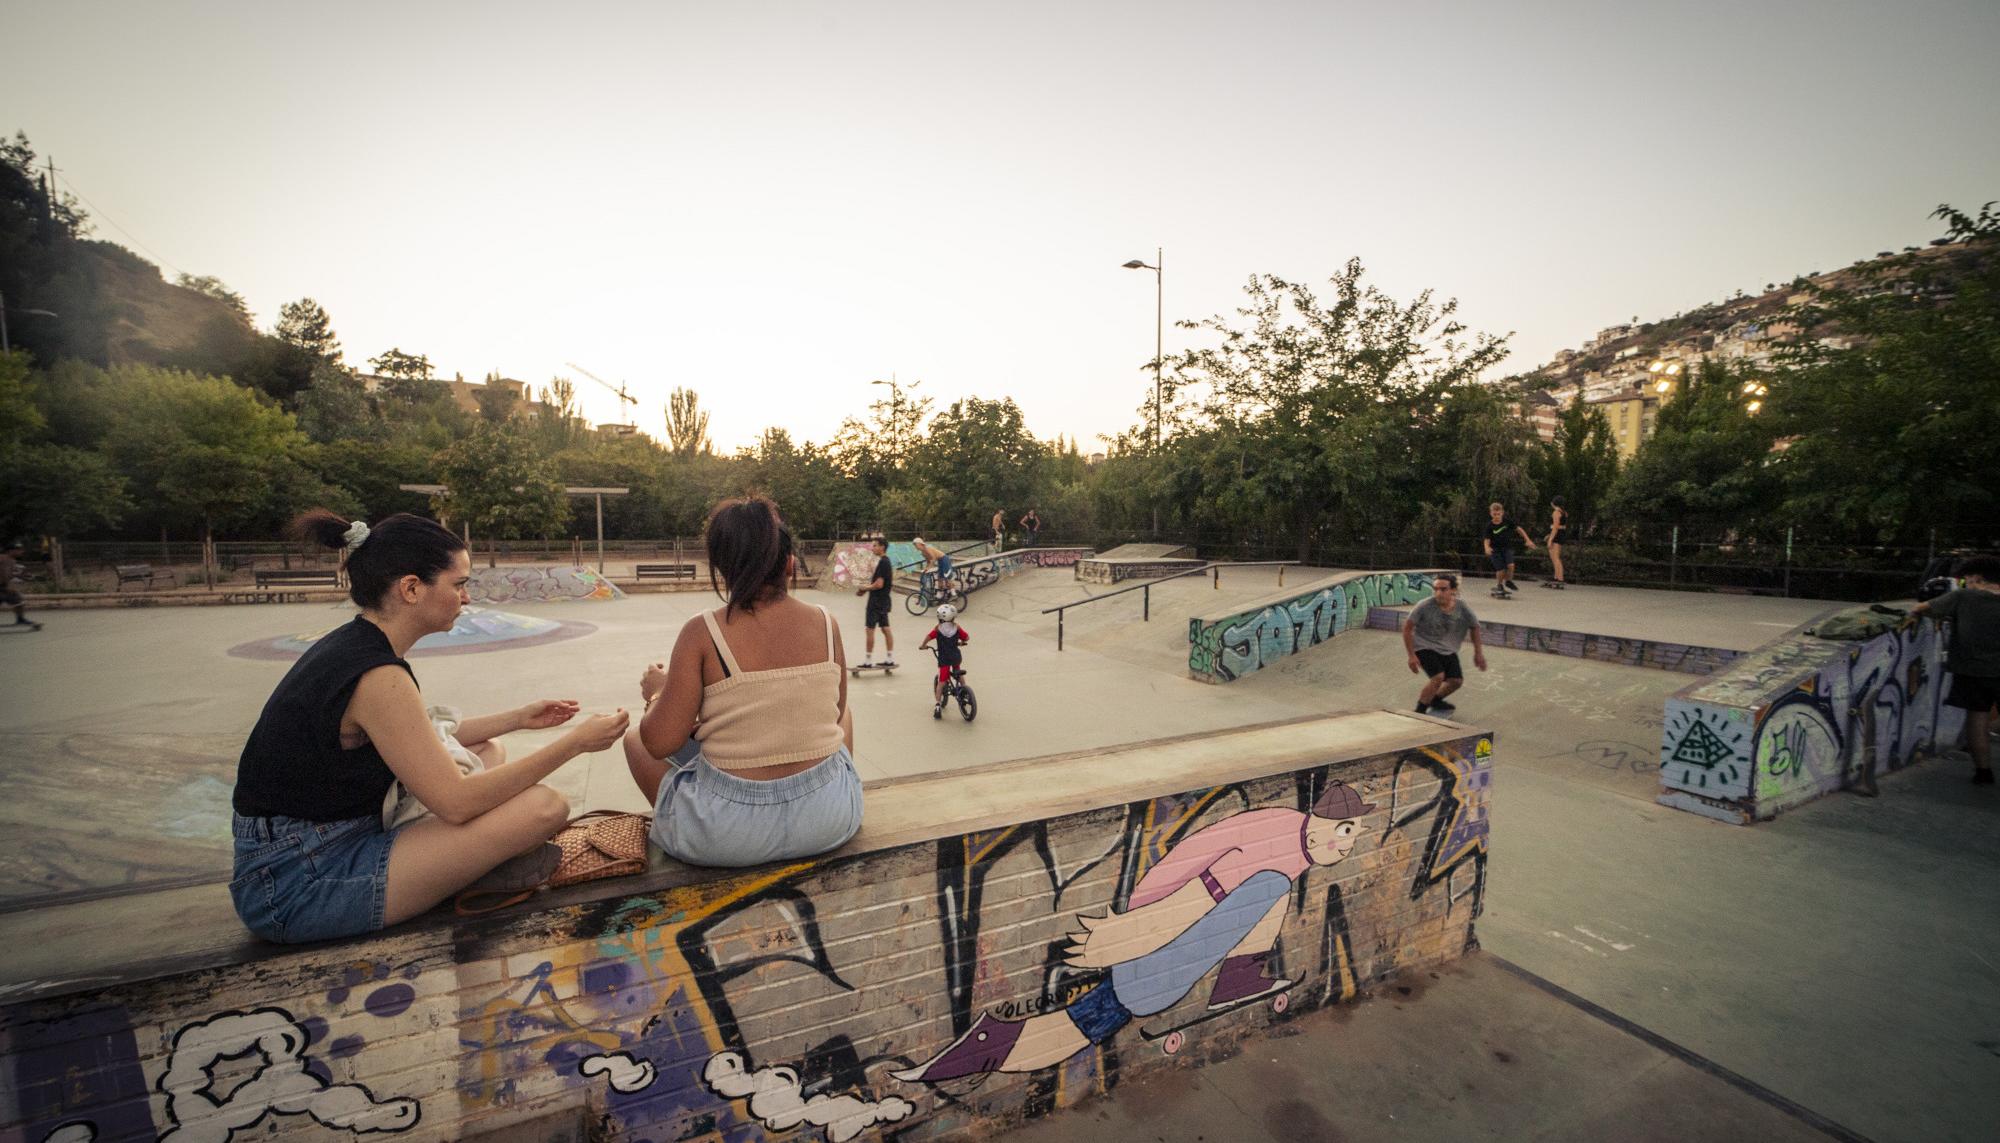 Skaters en el skatepark Bola de Oro, Granada - 6